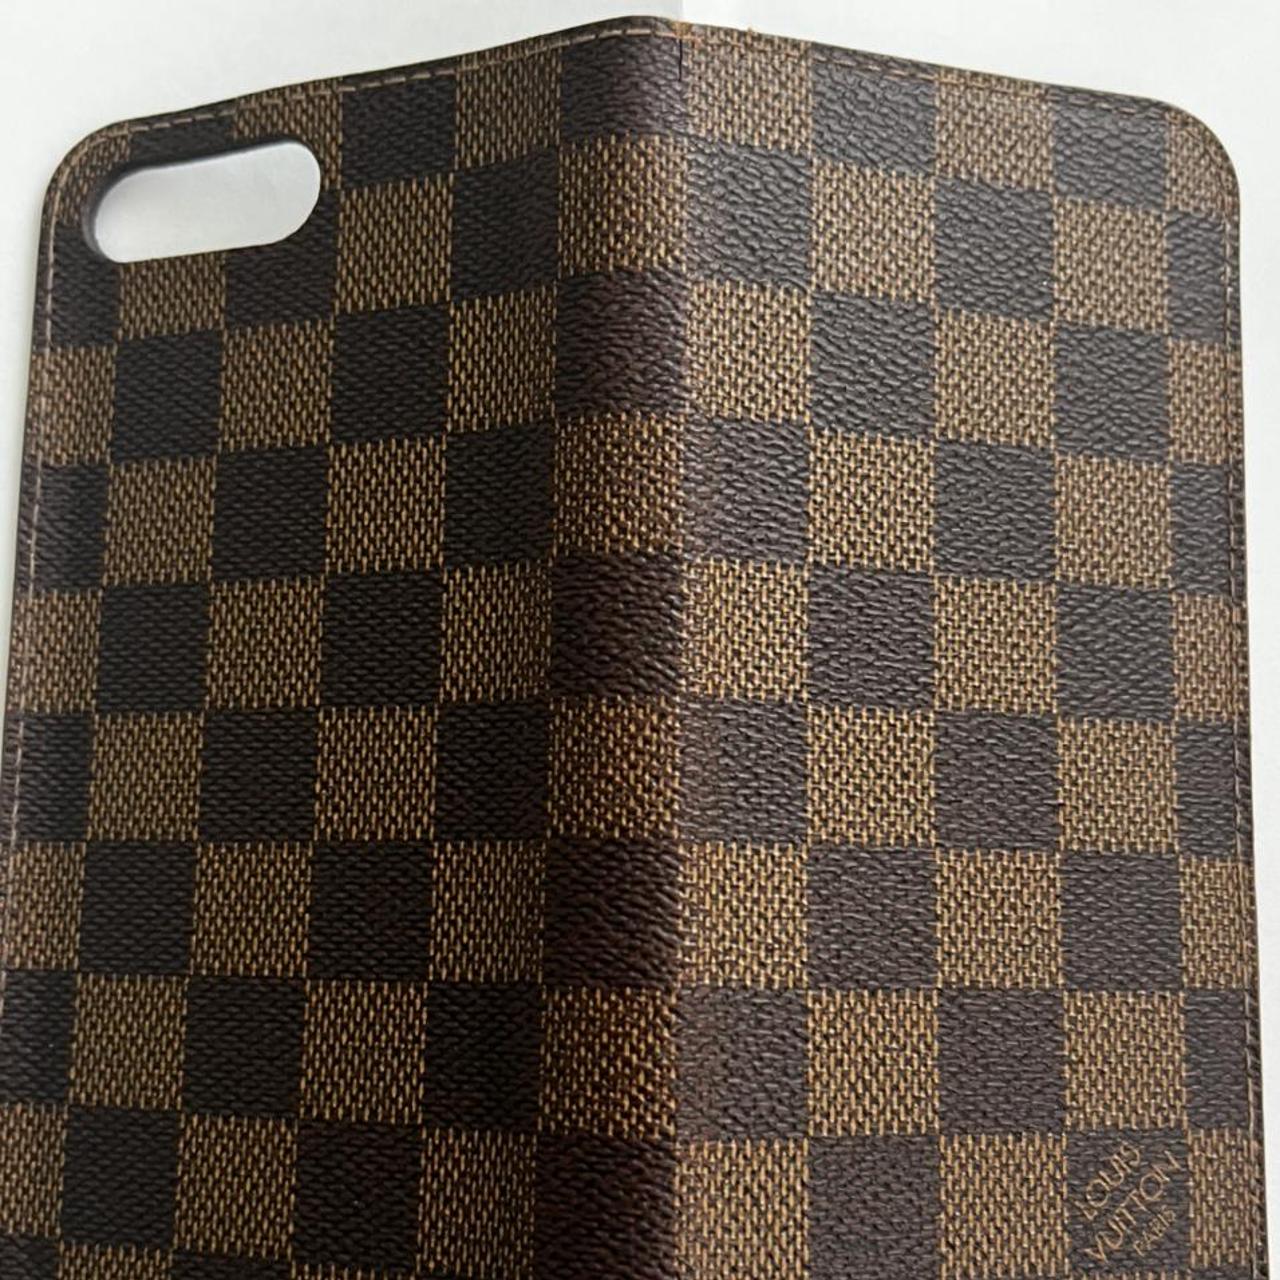 Louis Vuitton Flip Folio Case •iPhone 7/8 plus • - Depop